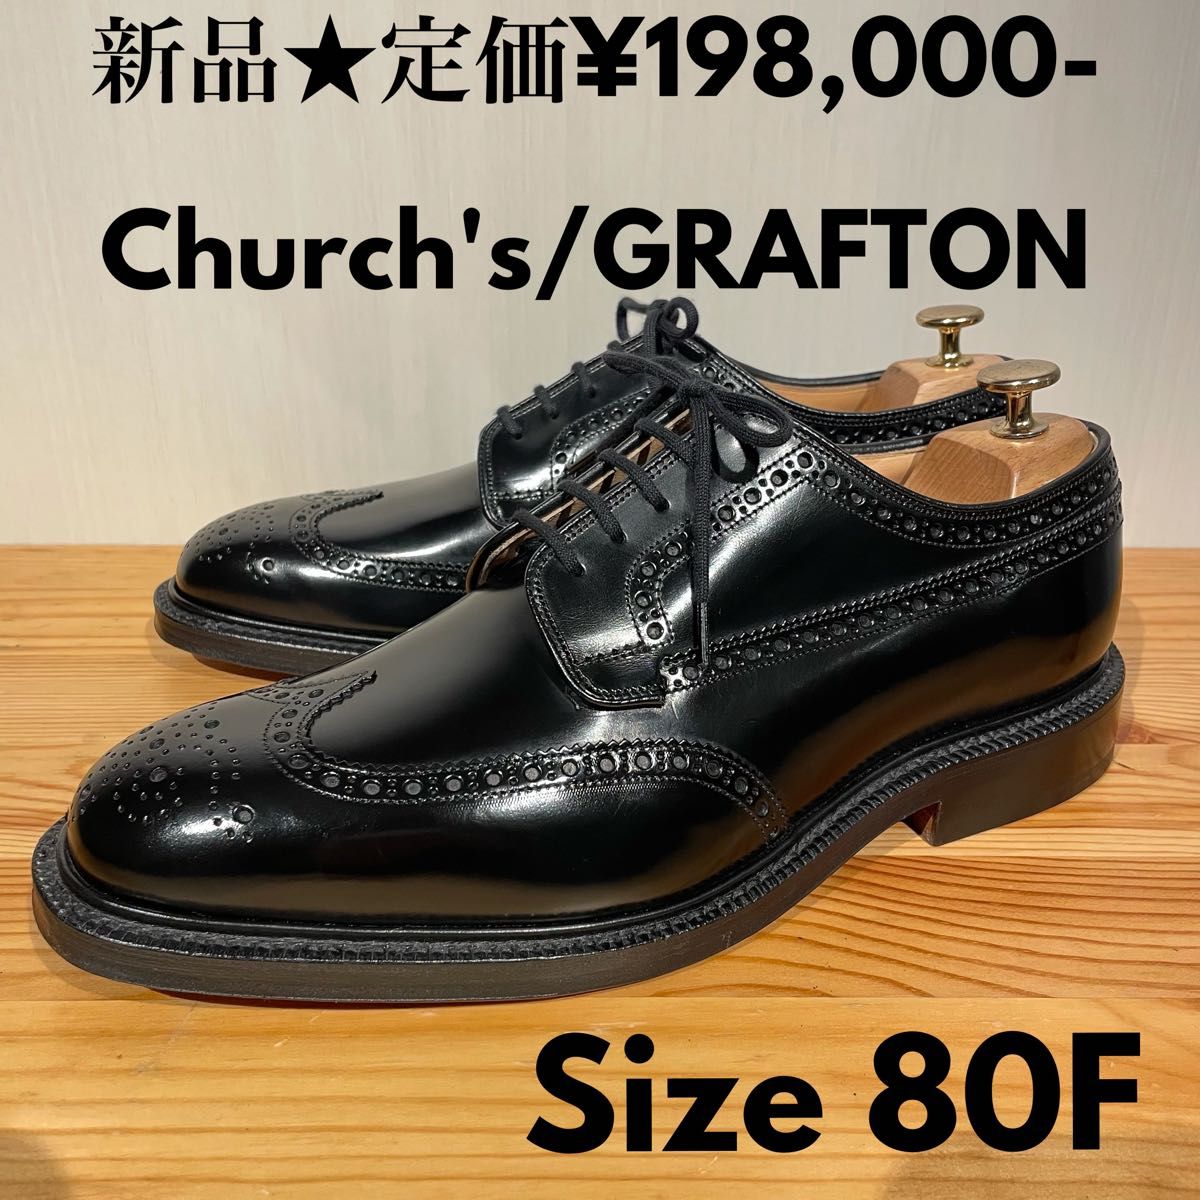 Church's GRAFTON グラフトン コードバン 173 85F 靴 ドレス/ビジネス